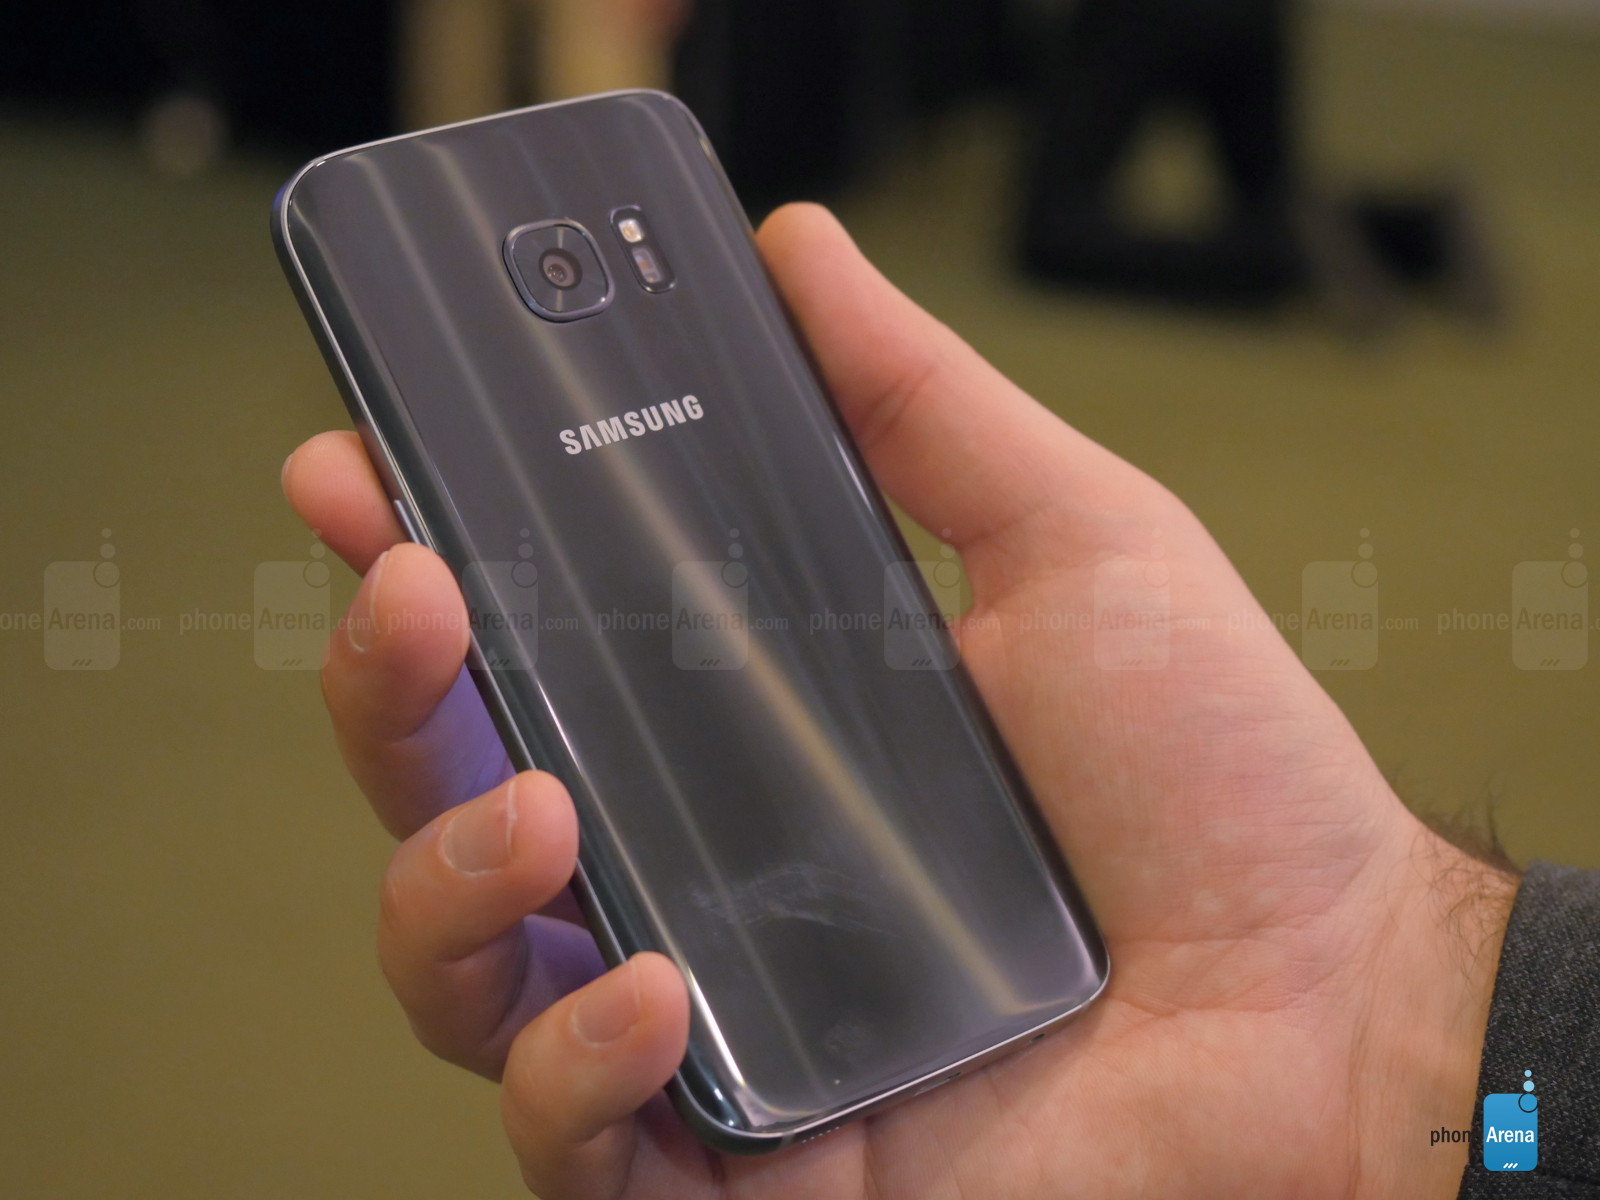 So sánh nhanh Samsung Galaxy S7 và LG G5